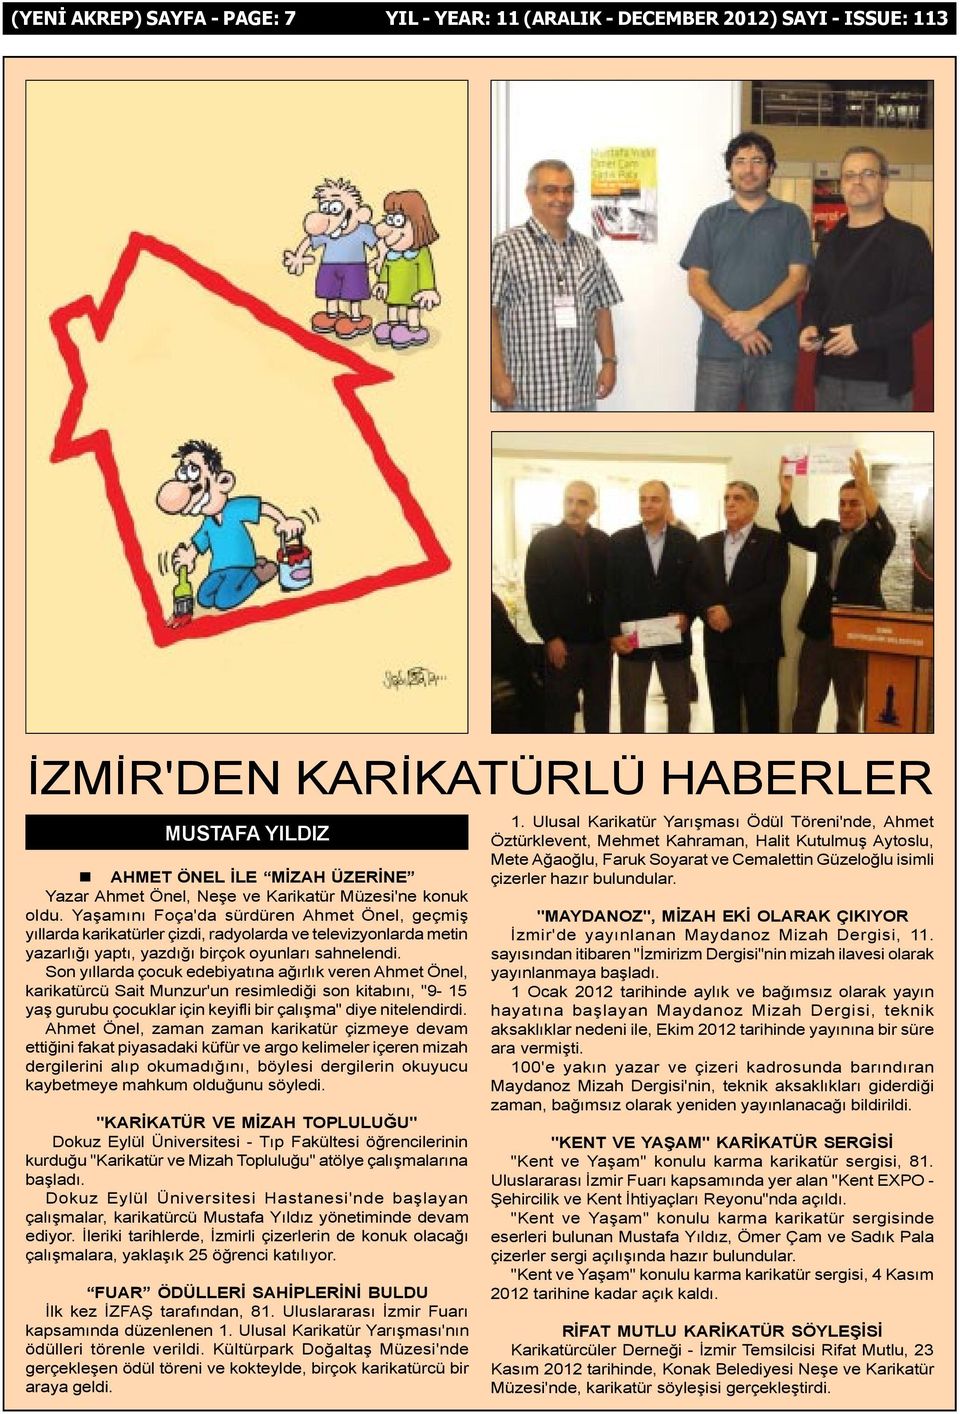 Son yýllarda çocuk edebiyatýna aðýrlýk veren Ahmet Önel, karikatürcü Sait Munzur'un resimlediði son kitabýný, "9-15 yaþ gurubu çocuklar için keyifli bir çalýþma" diye nitelendirdi.